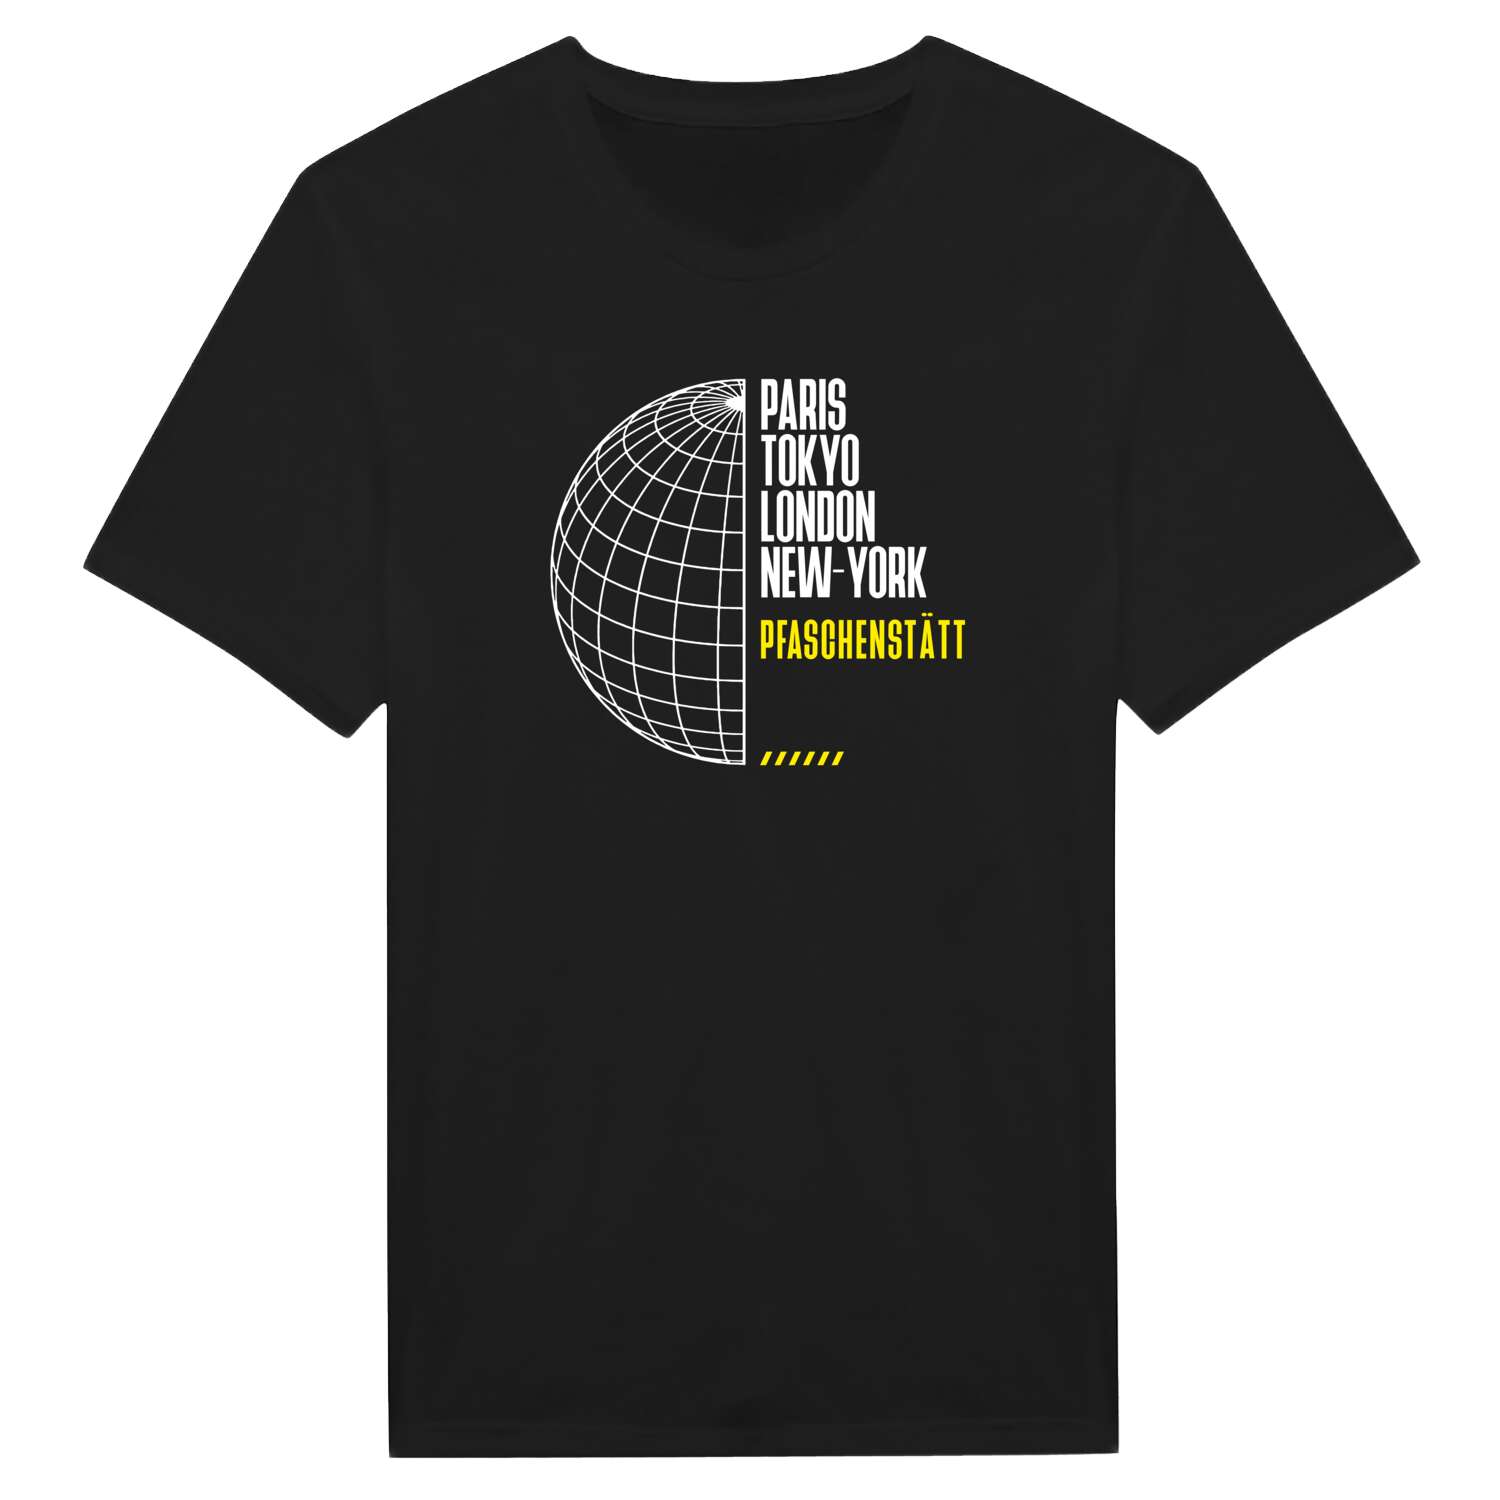 Pfaschenstätt T-Shirt »Paris Tokyo London«